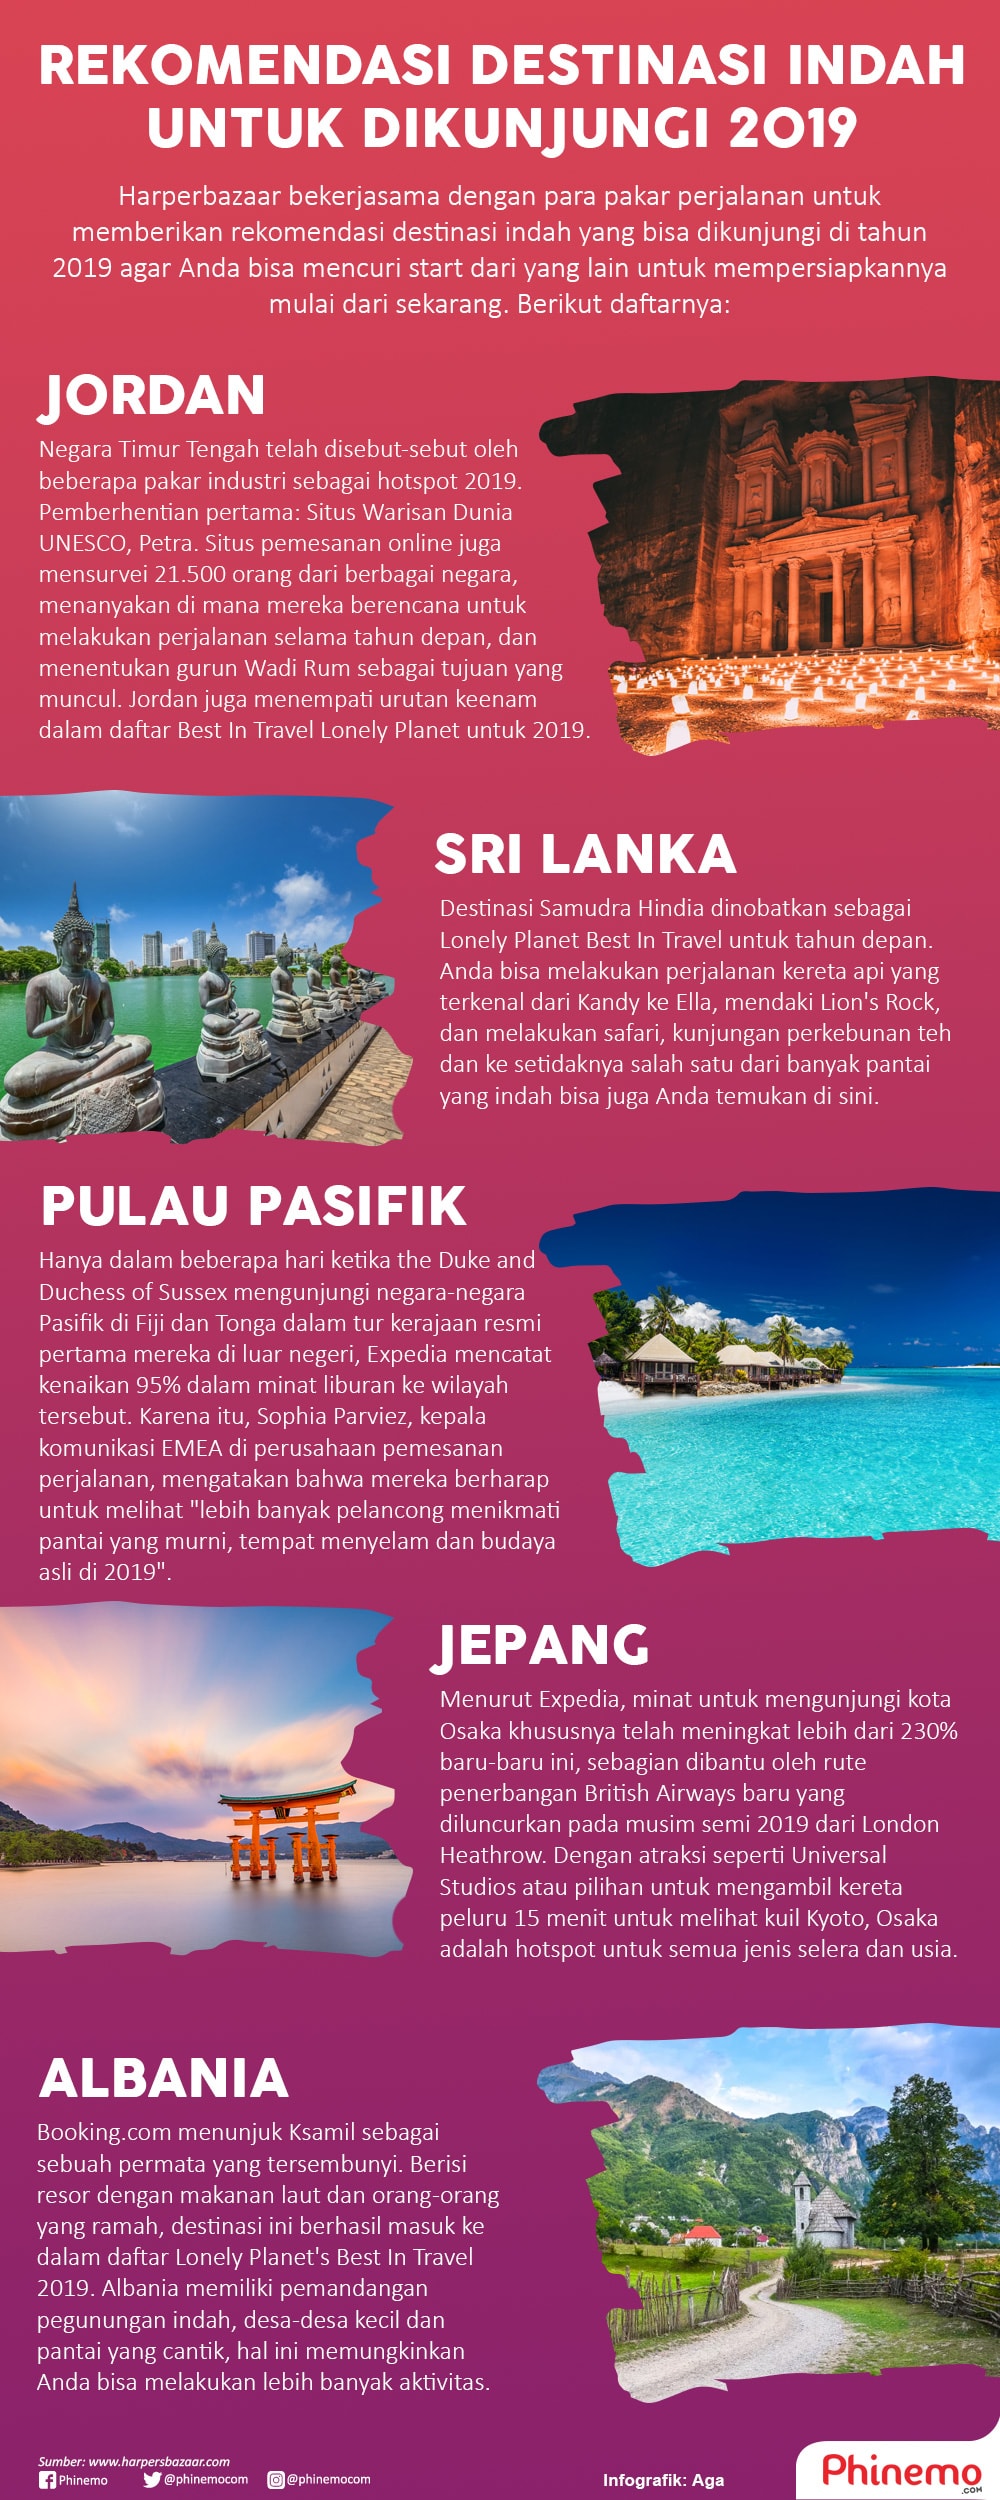 Infografik Rekomendasi Destinasi Indah untuk Dikunjungi Tahun 2019.